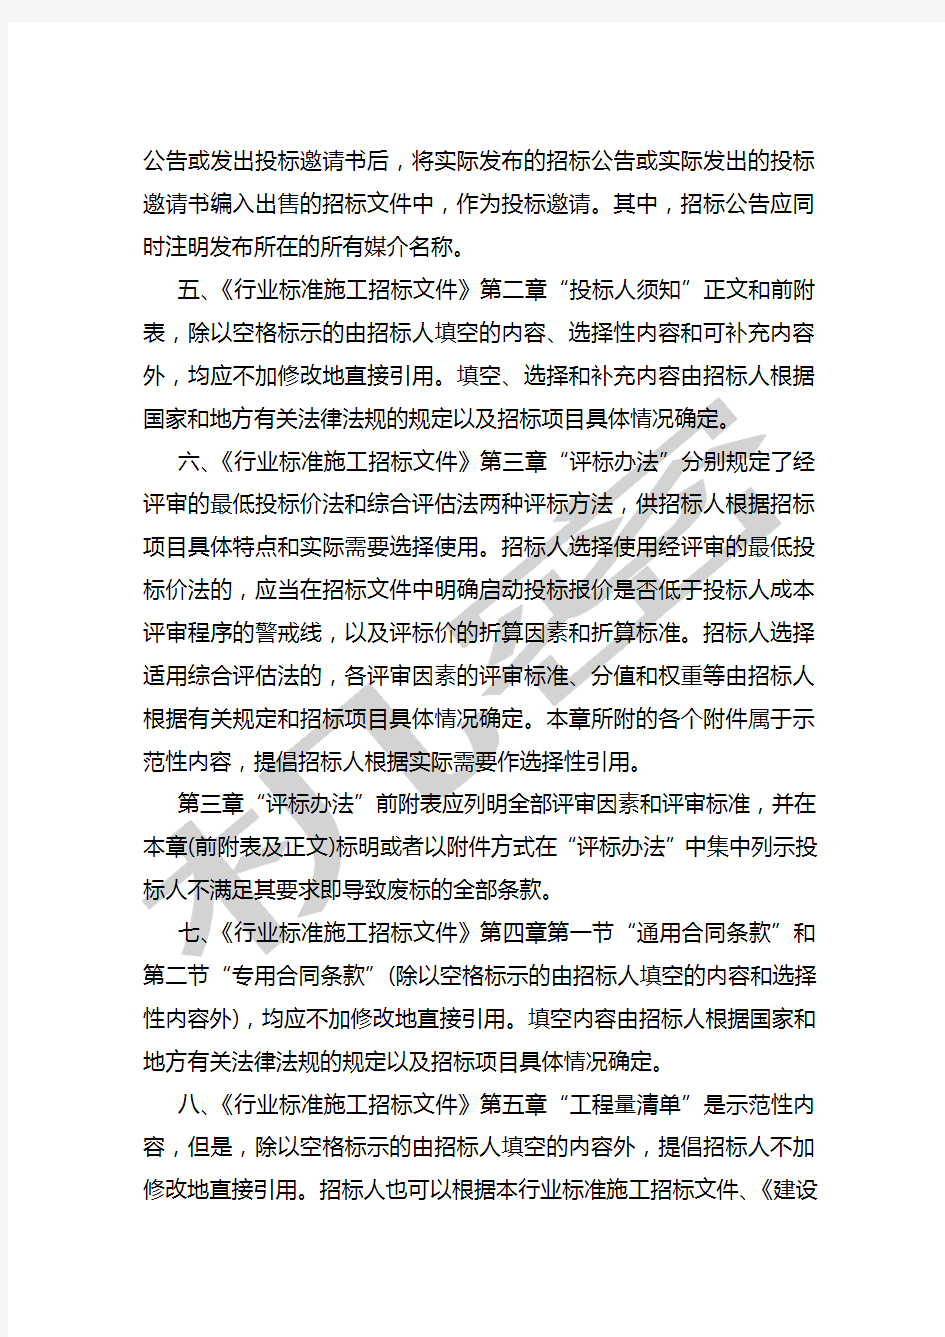 中华人民共和国房屋建筑和市政工程标准施工招标文件版